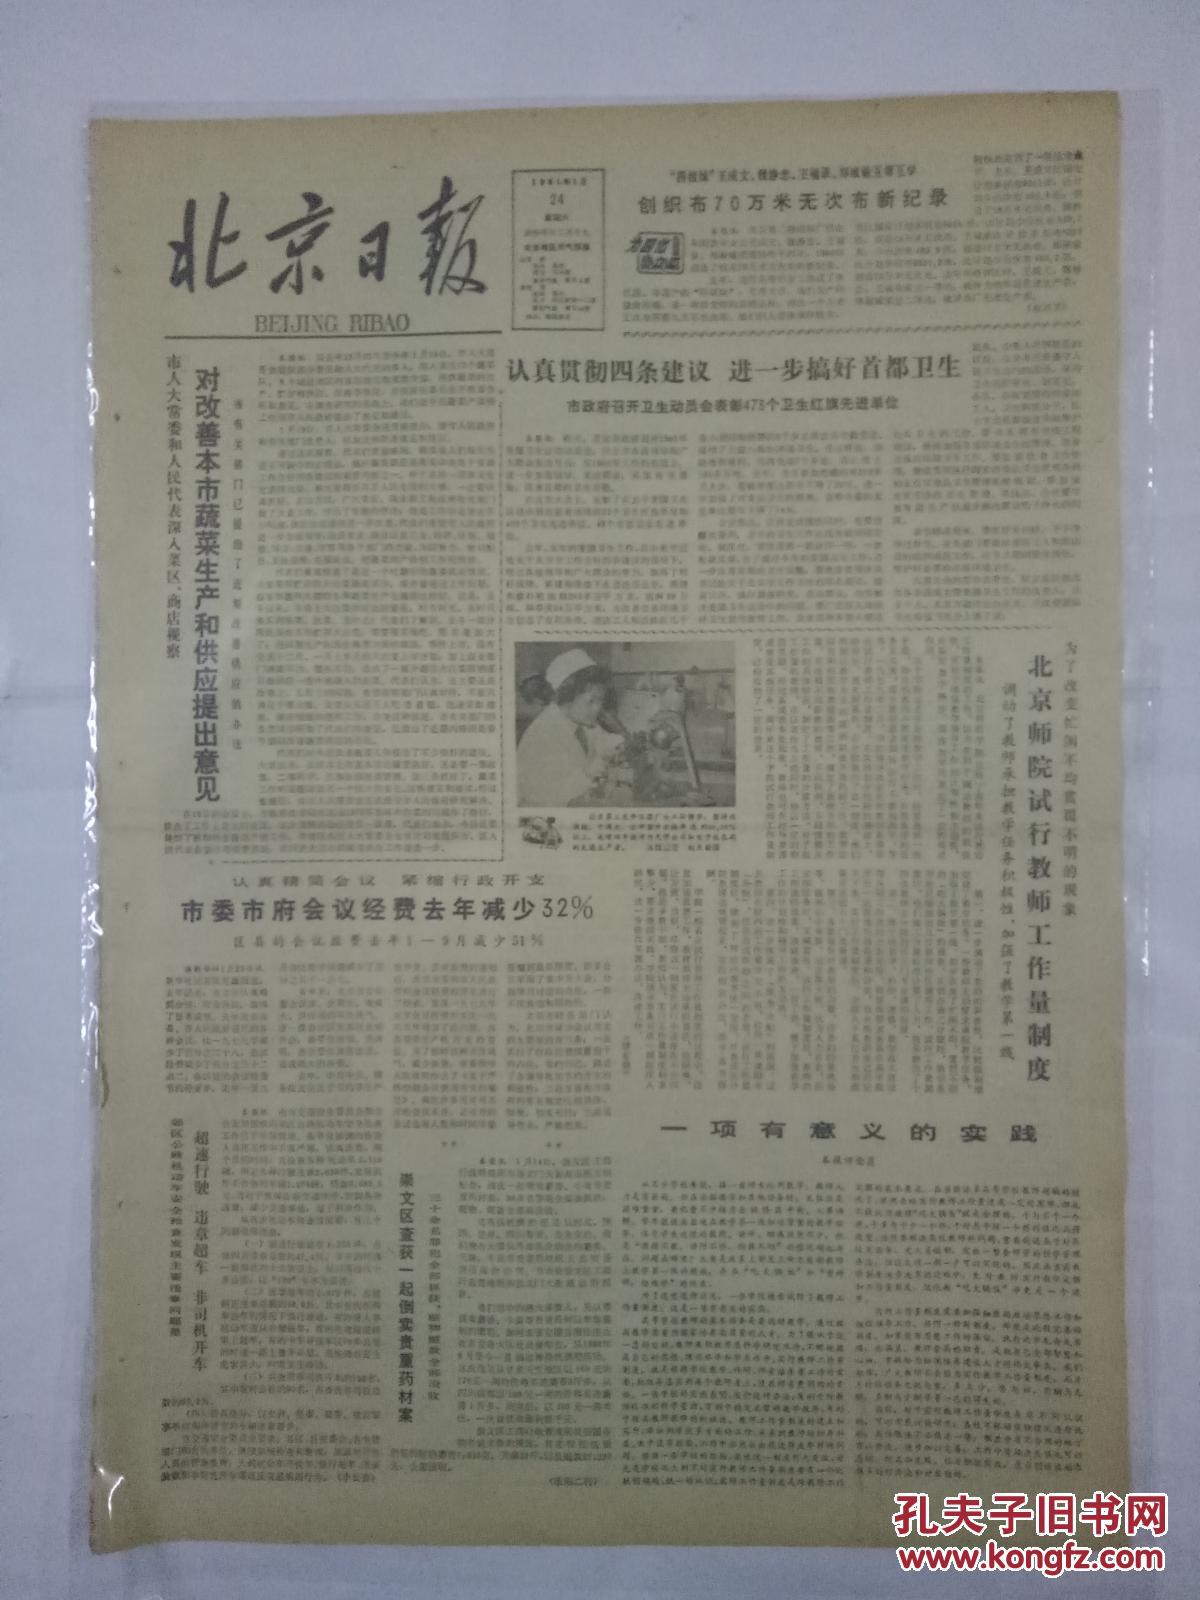 【图】北京日报1981年1月24日对改善本市蔬菜